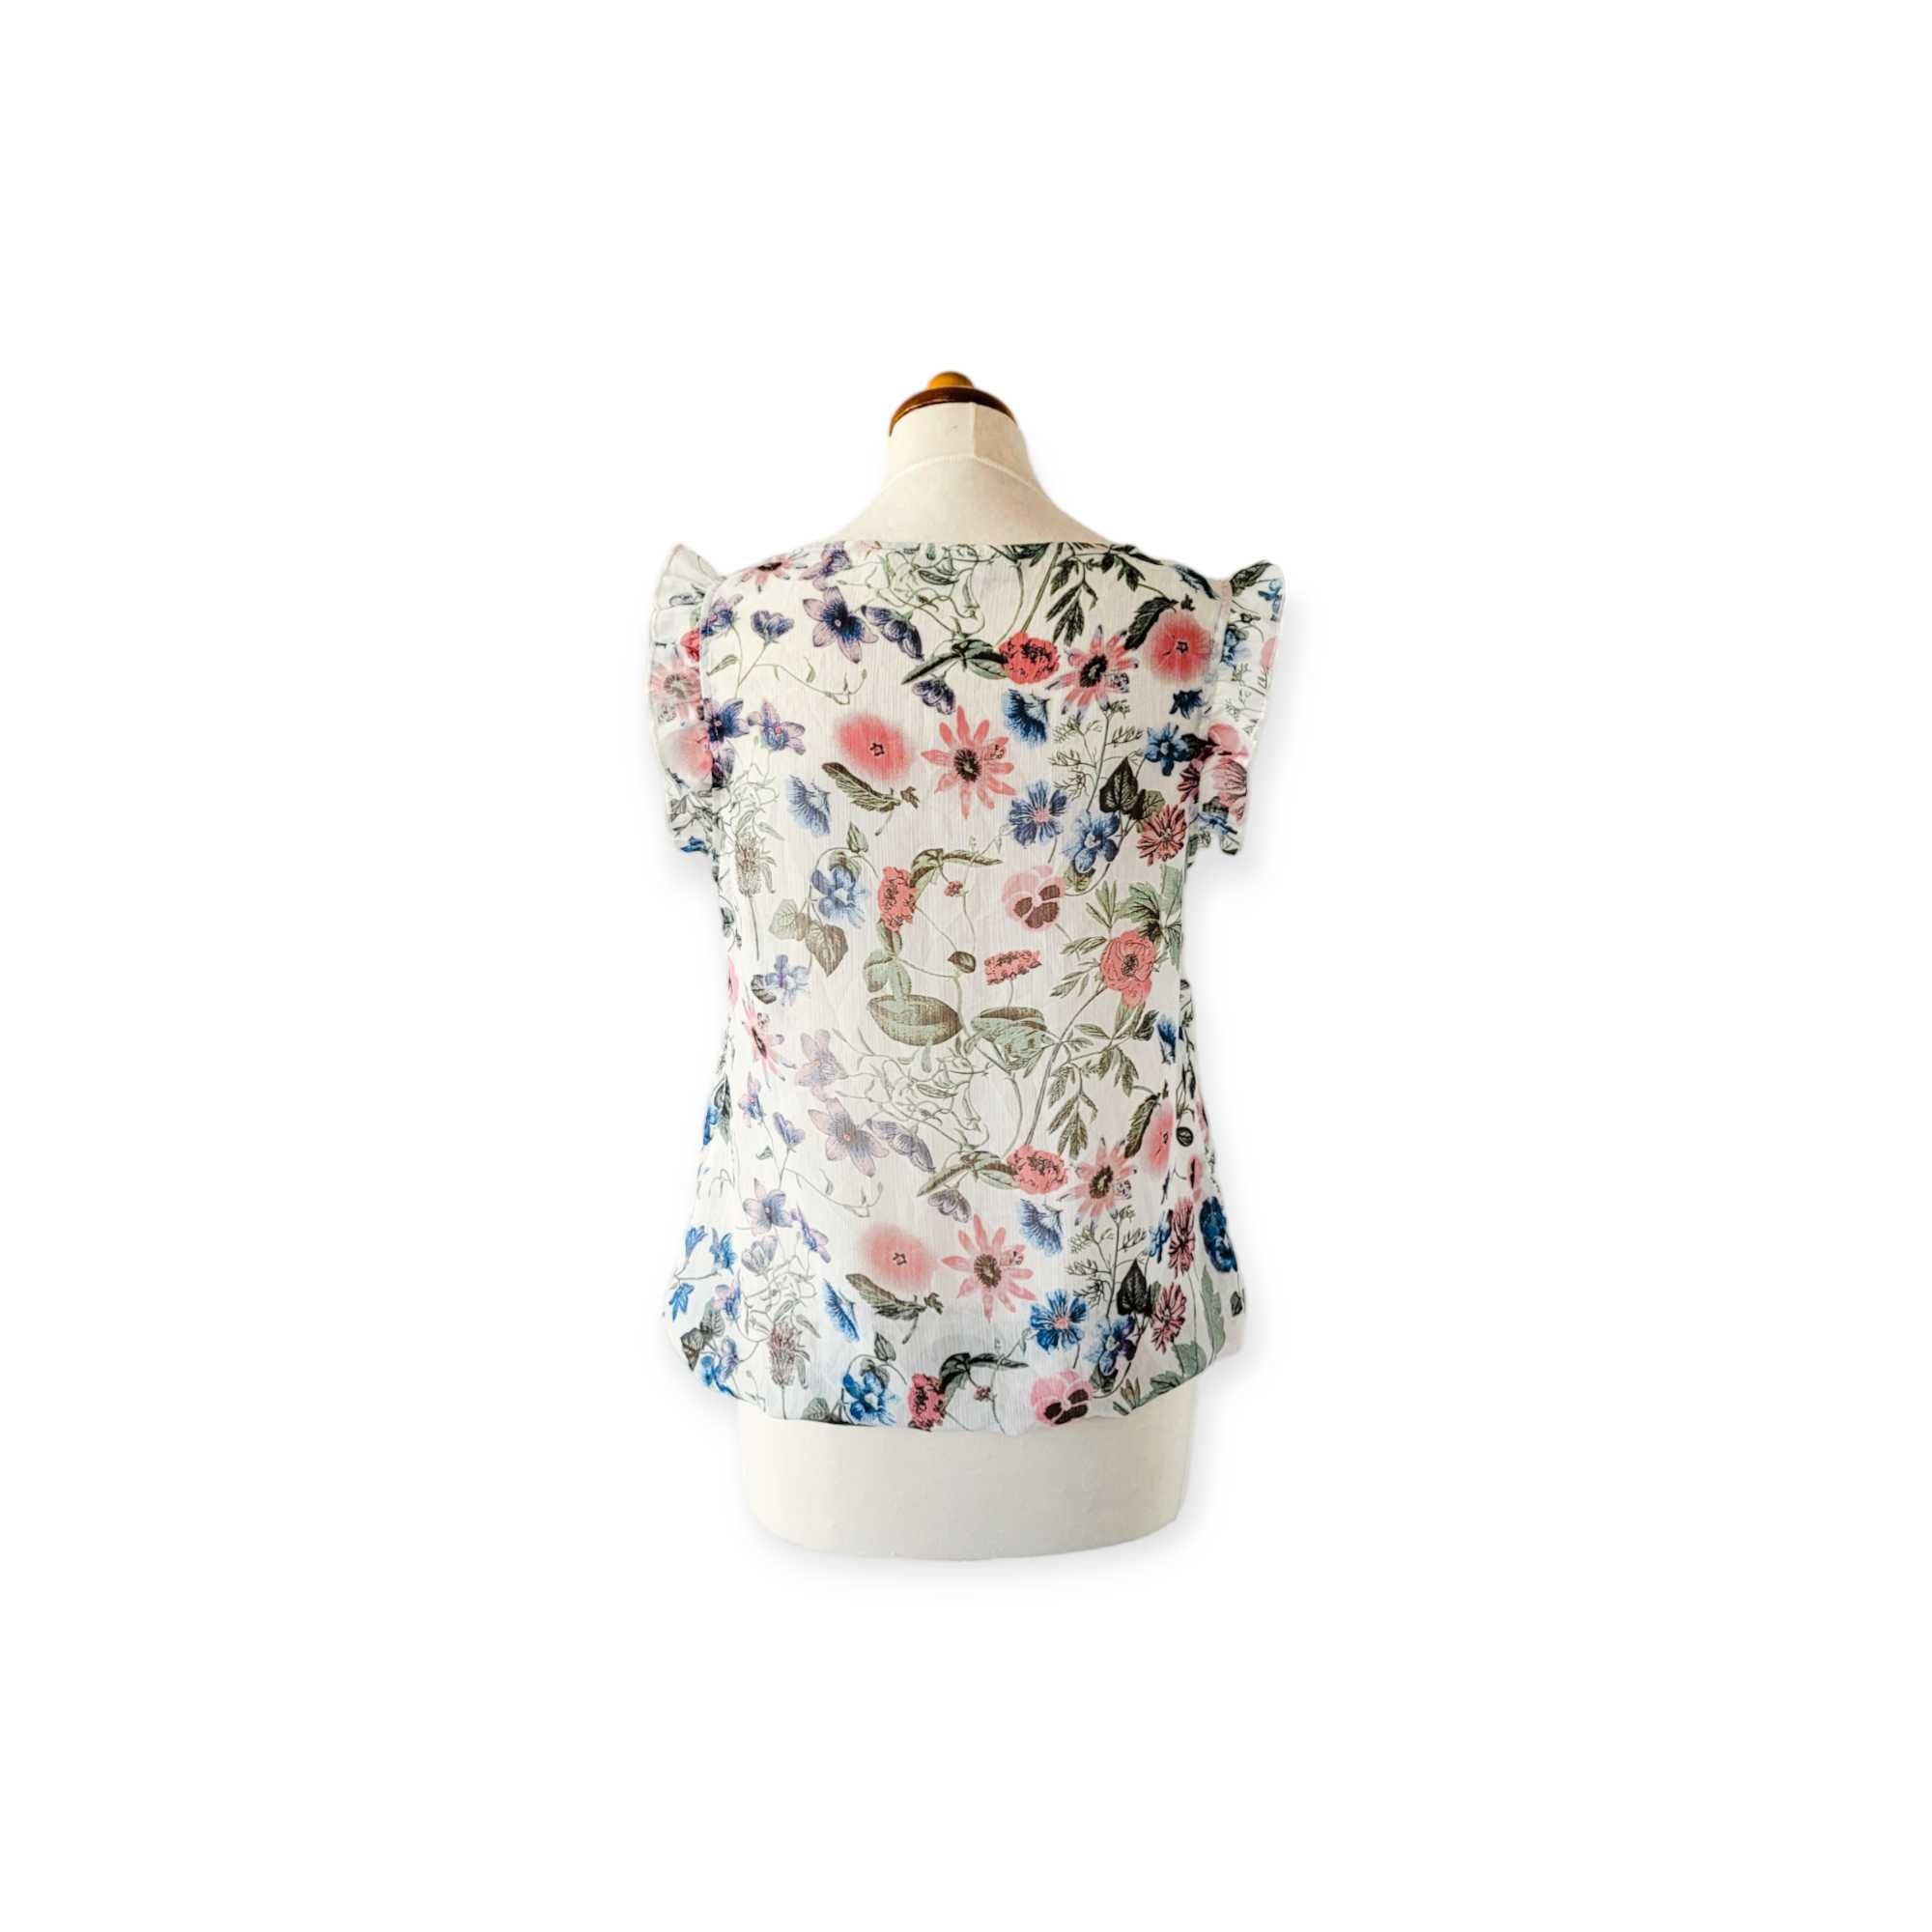 Kolorowa zwiewna bluzka damska M koszulka z falbanami boho kwiaty łąka